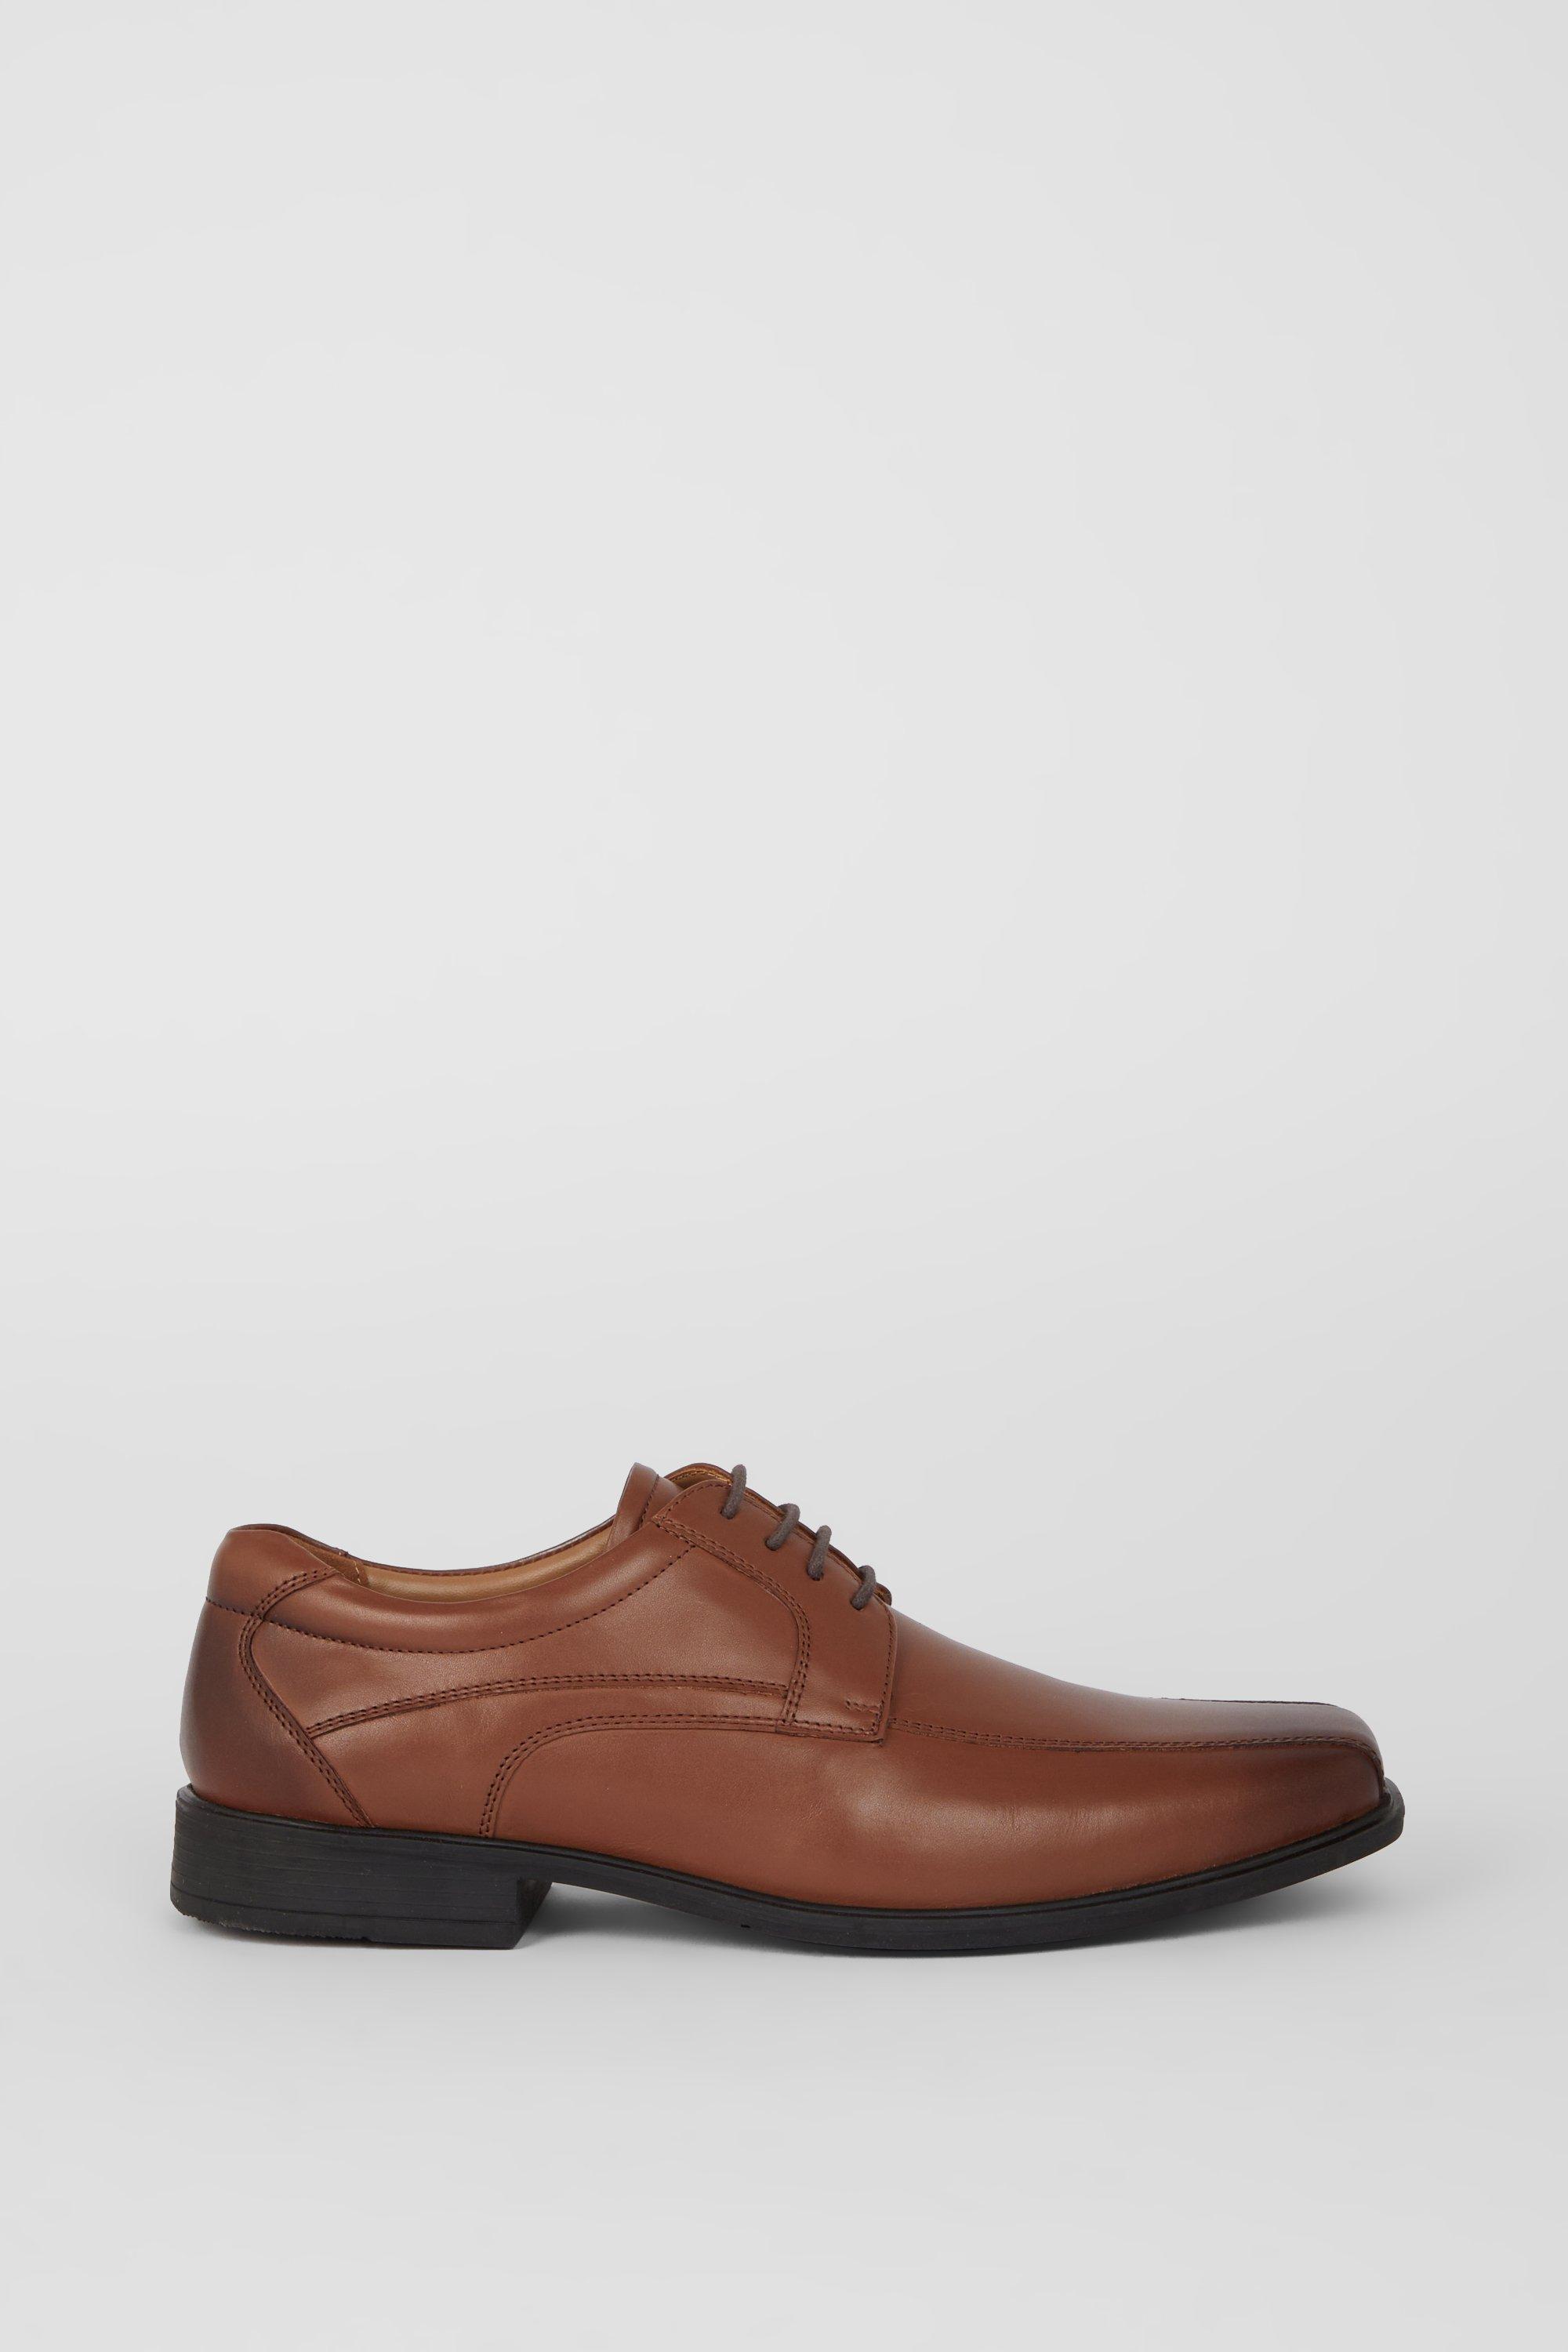 Кожаные туфли Airsoft Comfort на шнуровке Debenhams, коричневый кожаные туфли airsoft comfort на шнуровке debenhams коричневый